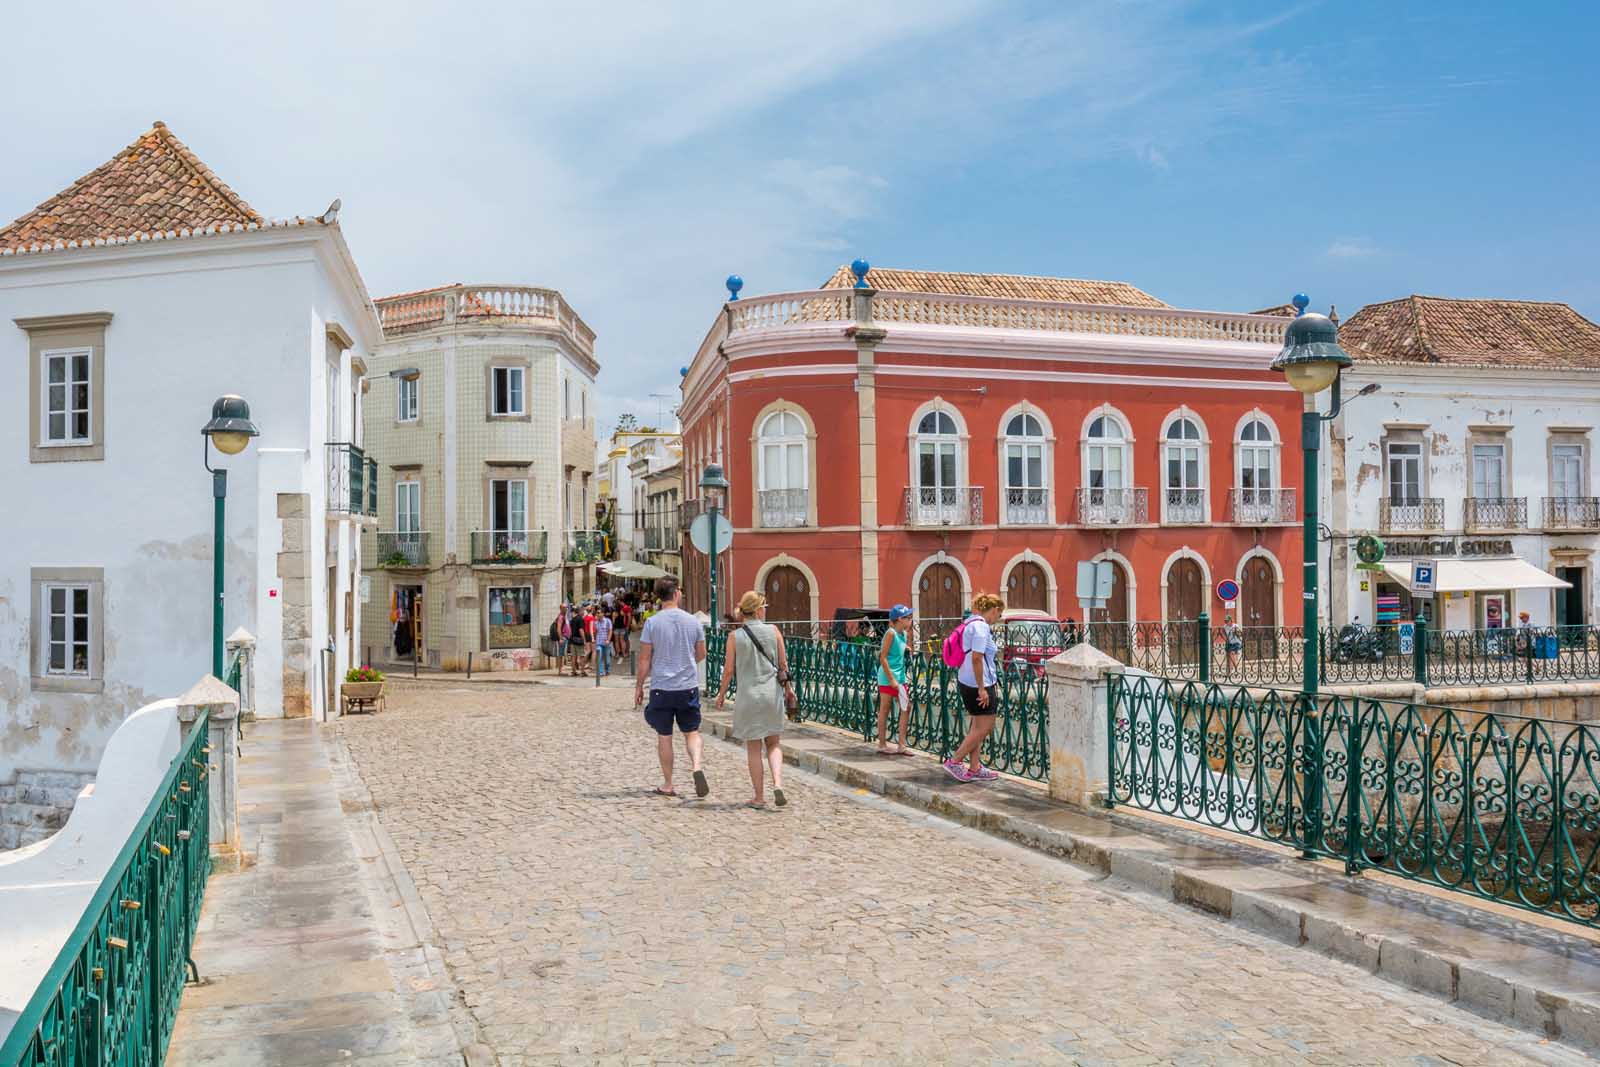 Village of Tavaria in Algarve Portugal